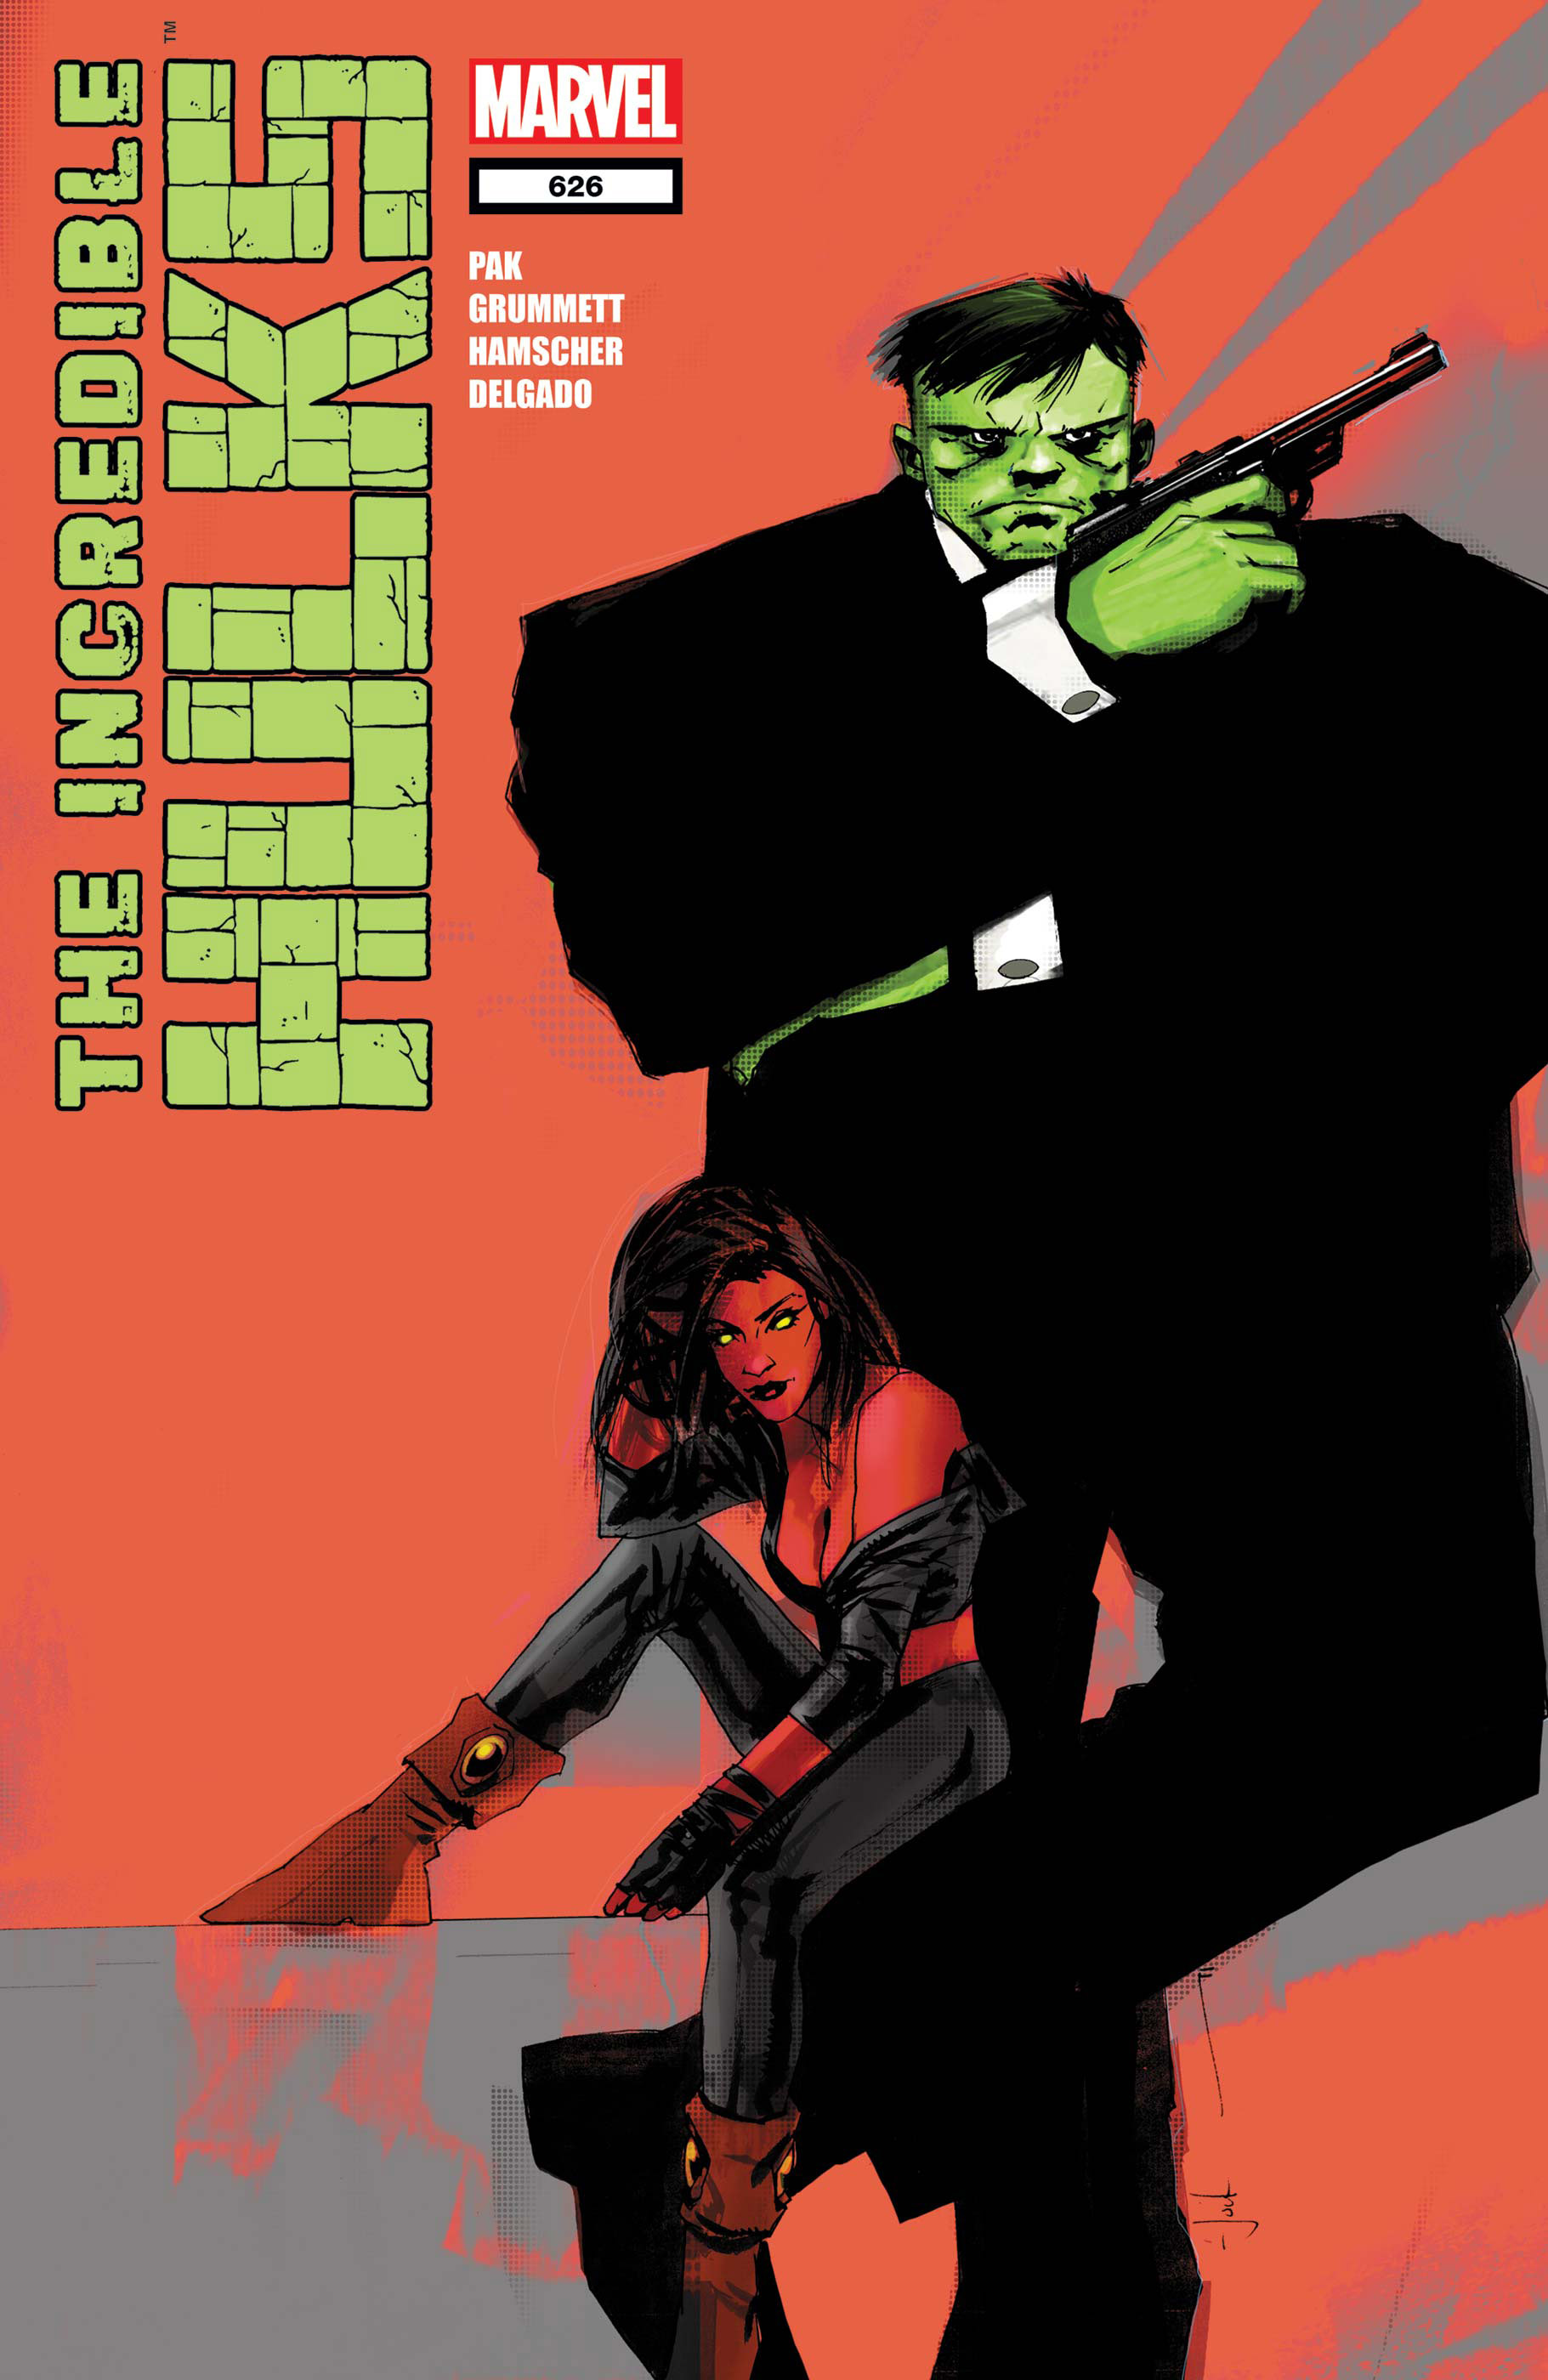 Incredible Hulks (2010) #626